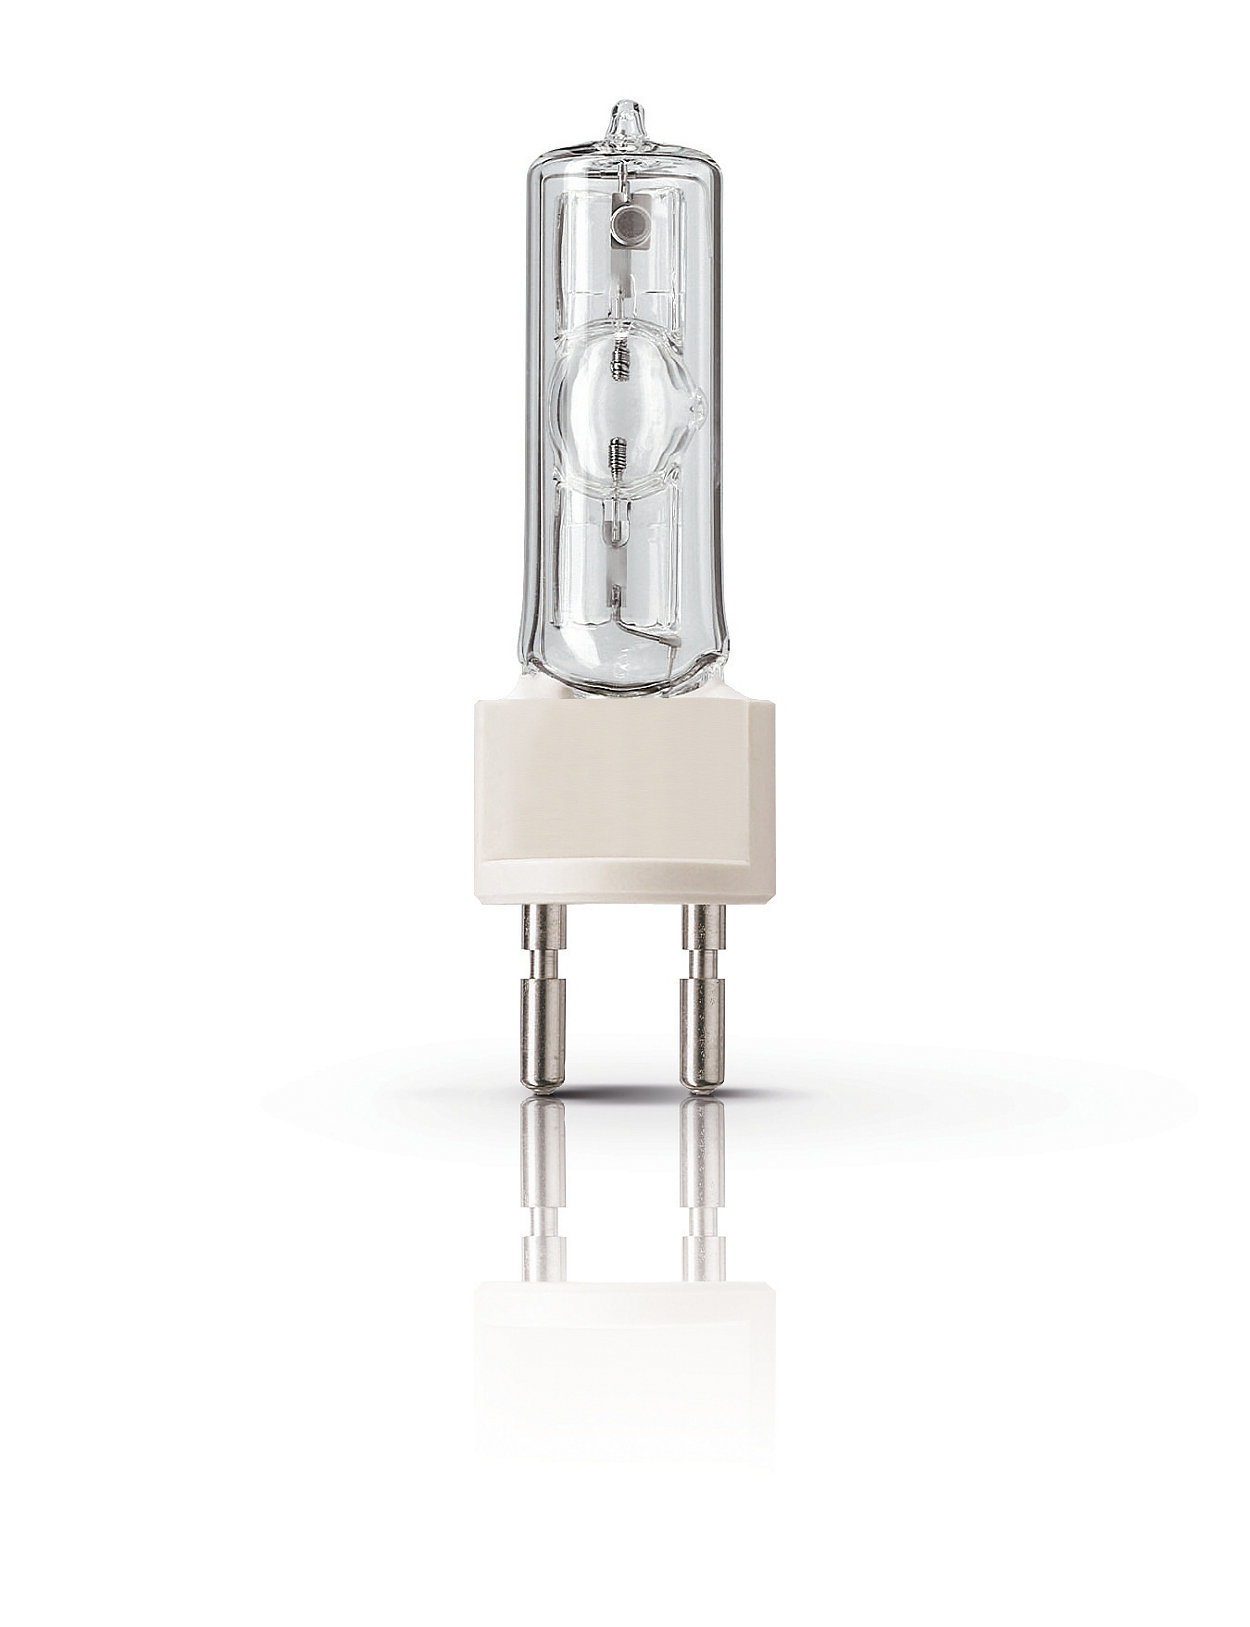 Architectural MSD – лампы для ночного освещения с одним цоколем